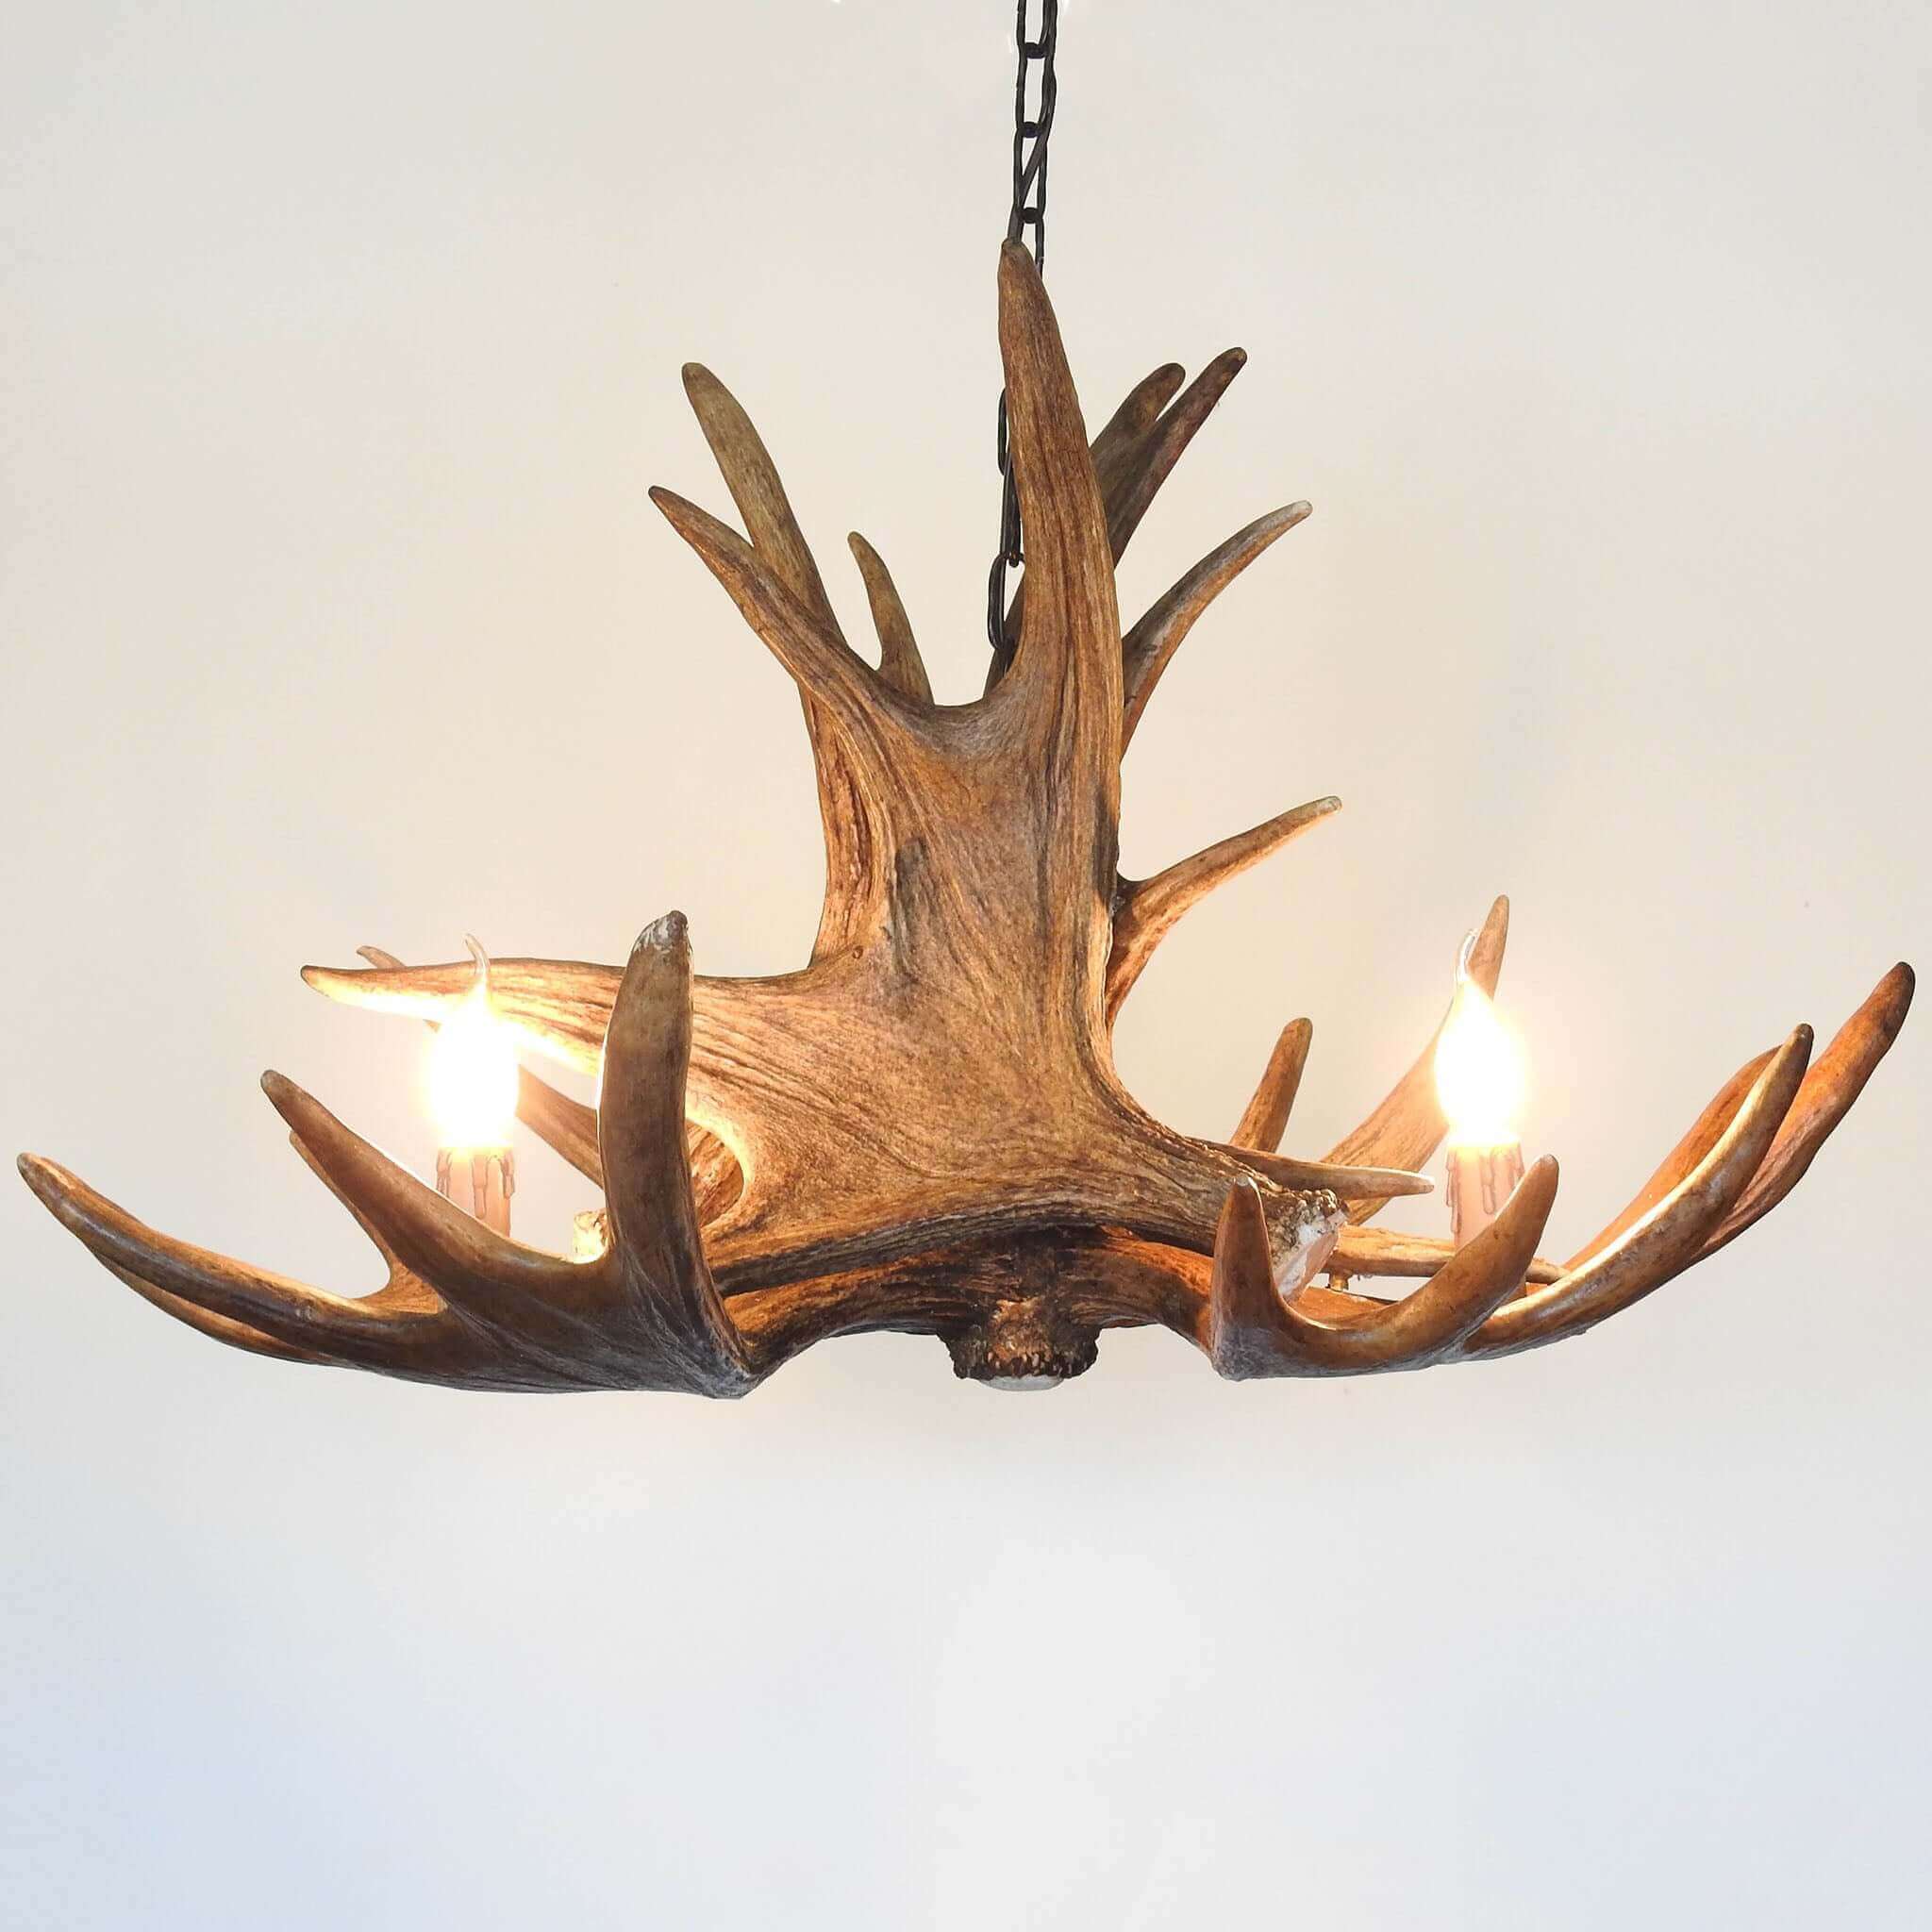 Rustic antler chandelier for 3 lights.